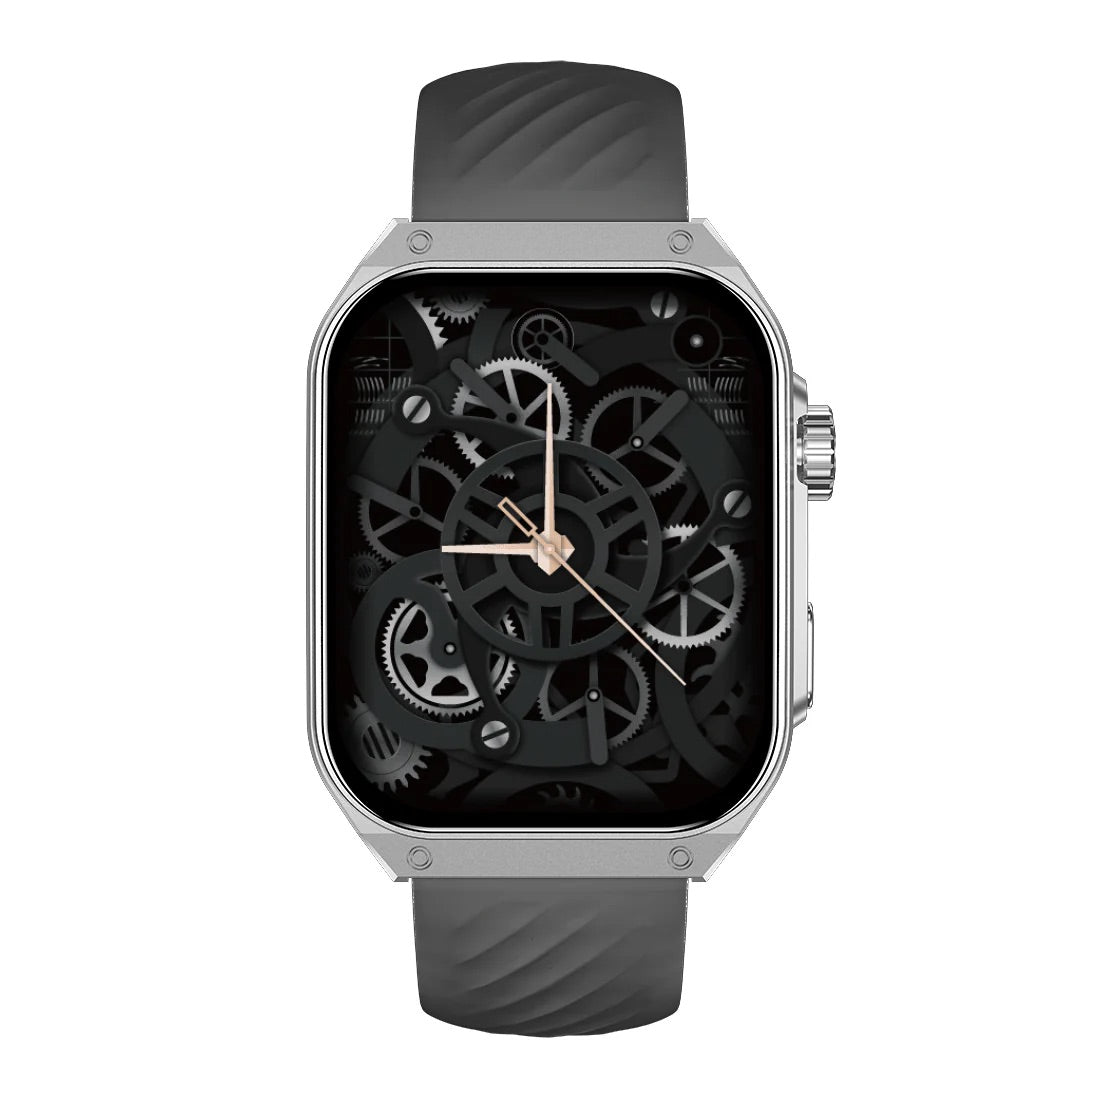 iGear Smartwatch Zeta Series